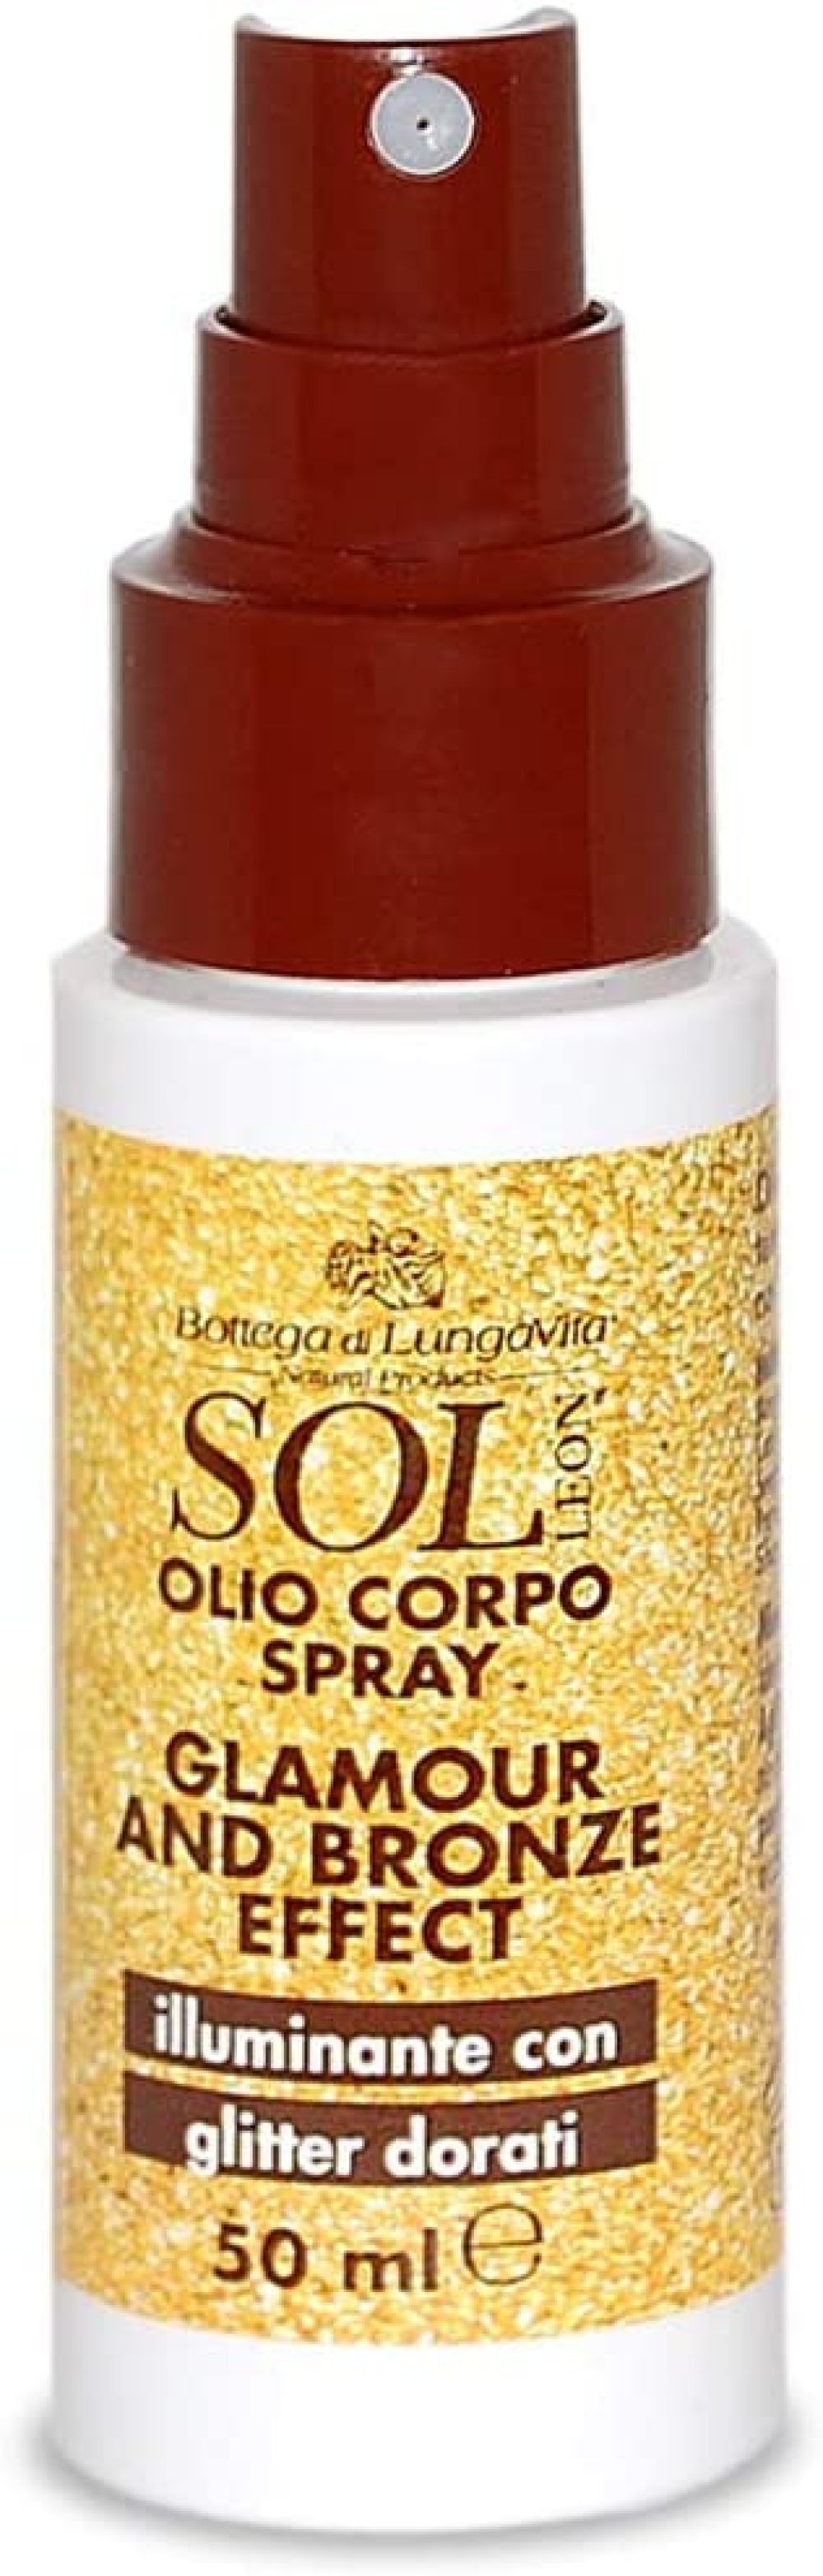 SOL olio corpo spray illuminante con glitter dorati